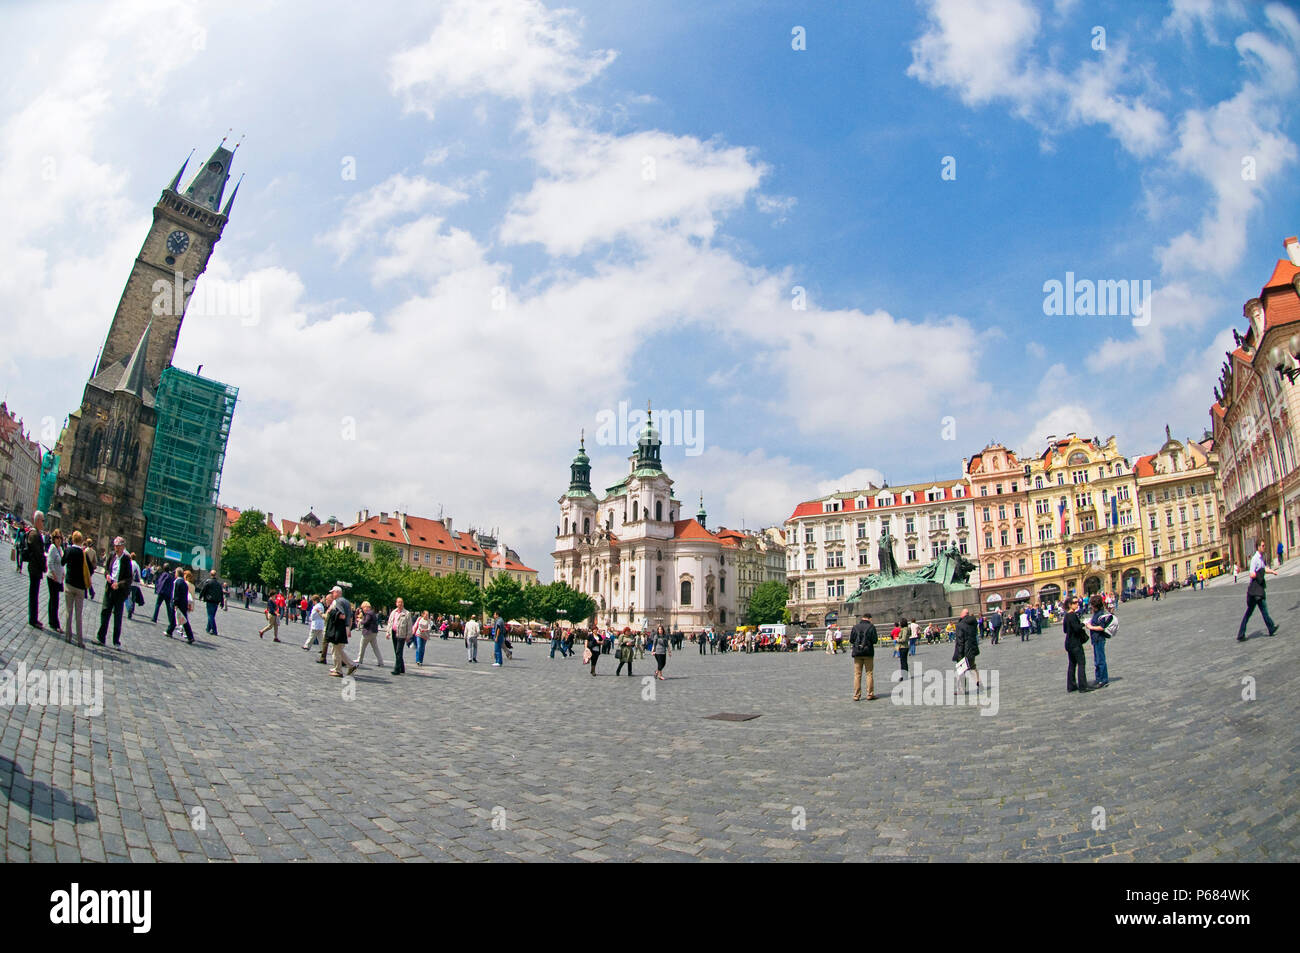 Die schöne St. Nicholas Kirche am alten Stadtplatz, Prag, Tschechien, Ost Europa Stockfoto